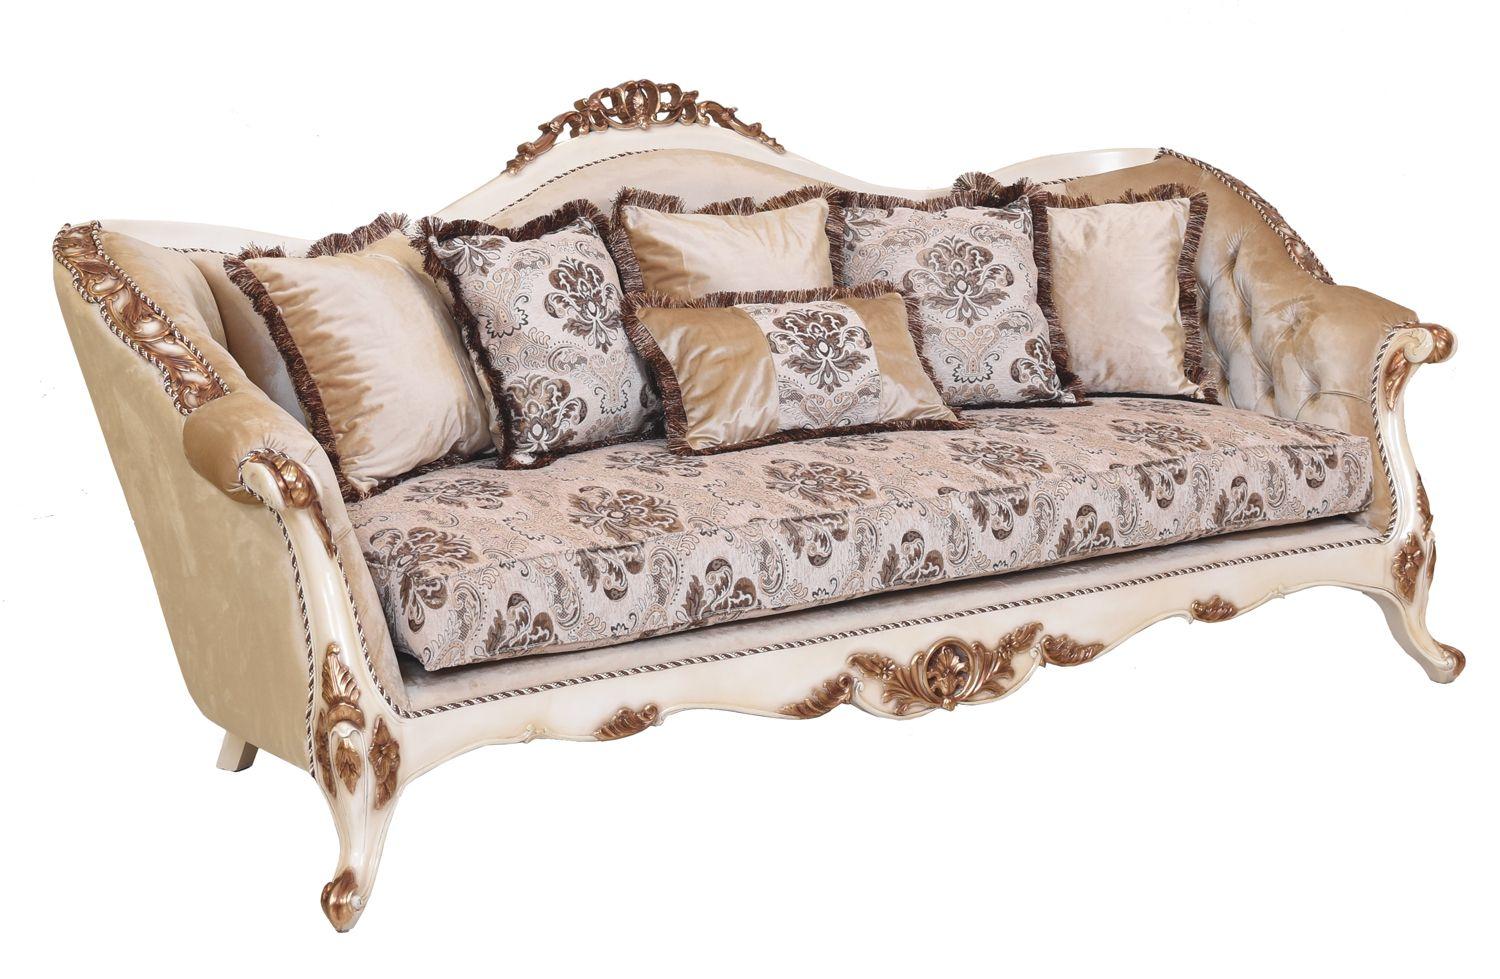 Classic, Traditional Sofa PARIS 37008-S in Antique, Gold, Beige Fabric